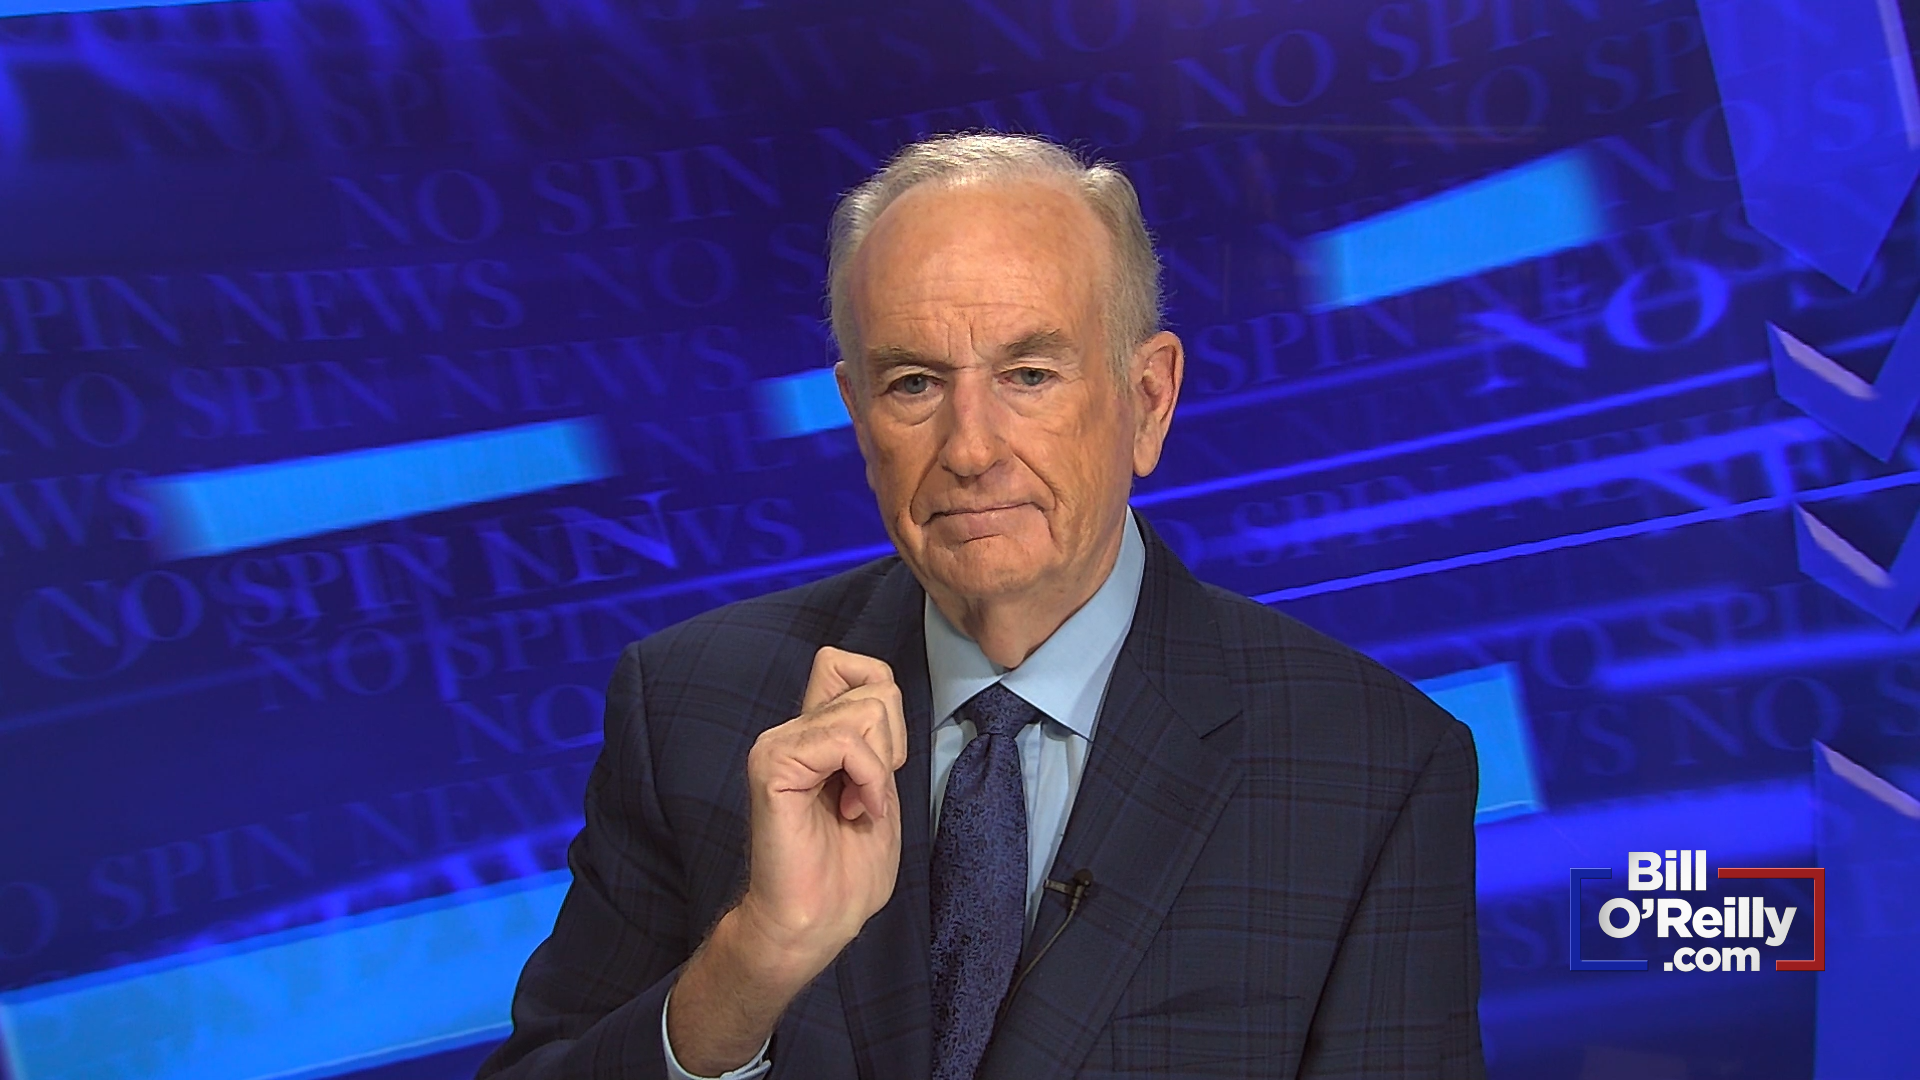 O'Reilly: 'I Will Never Go to Mexico!'